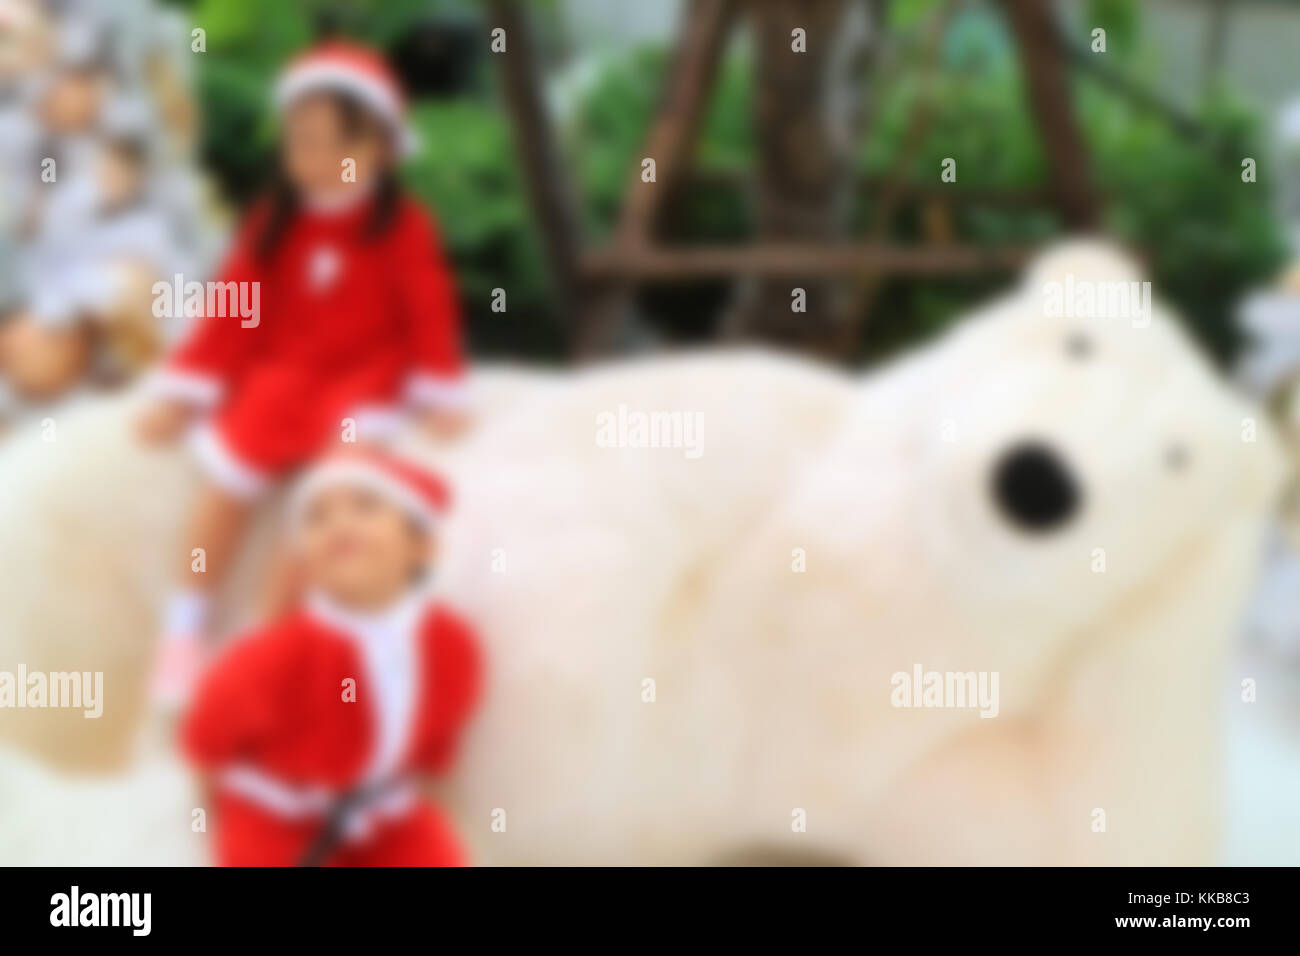 Al di fuori della messa a fuoco immagine del piccolo ragazzo e ragazza di carino santa abiti giocando con un gigantesco orso polare toy Foto Stock